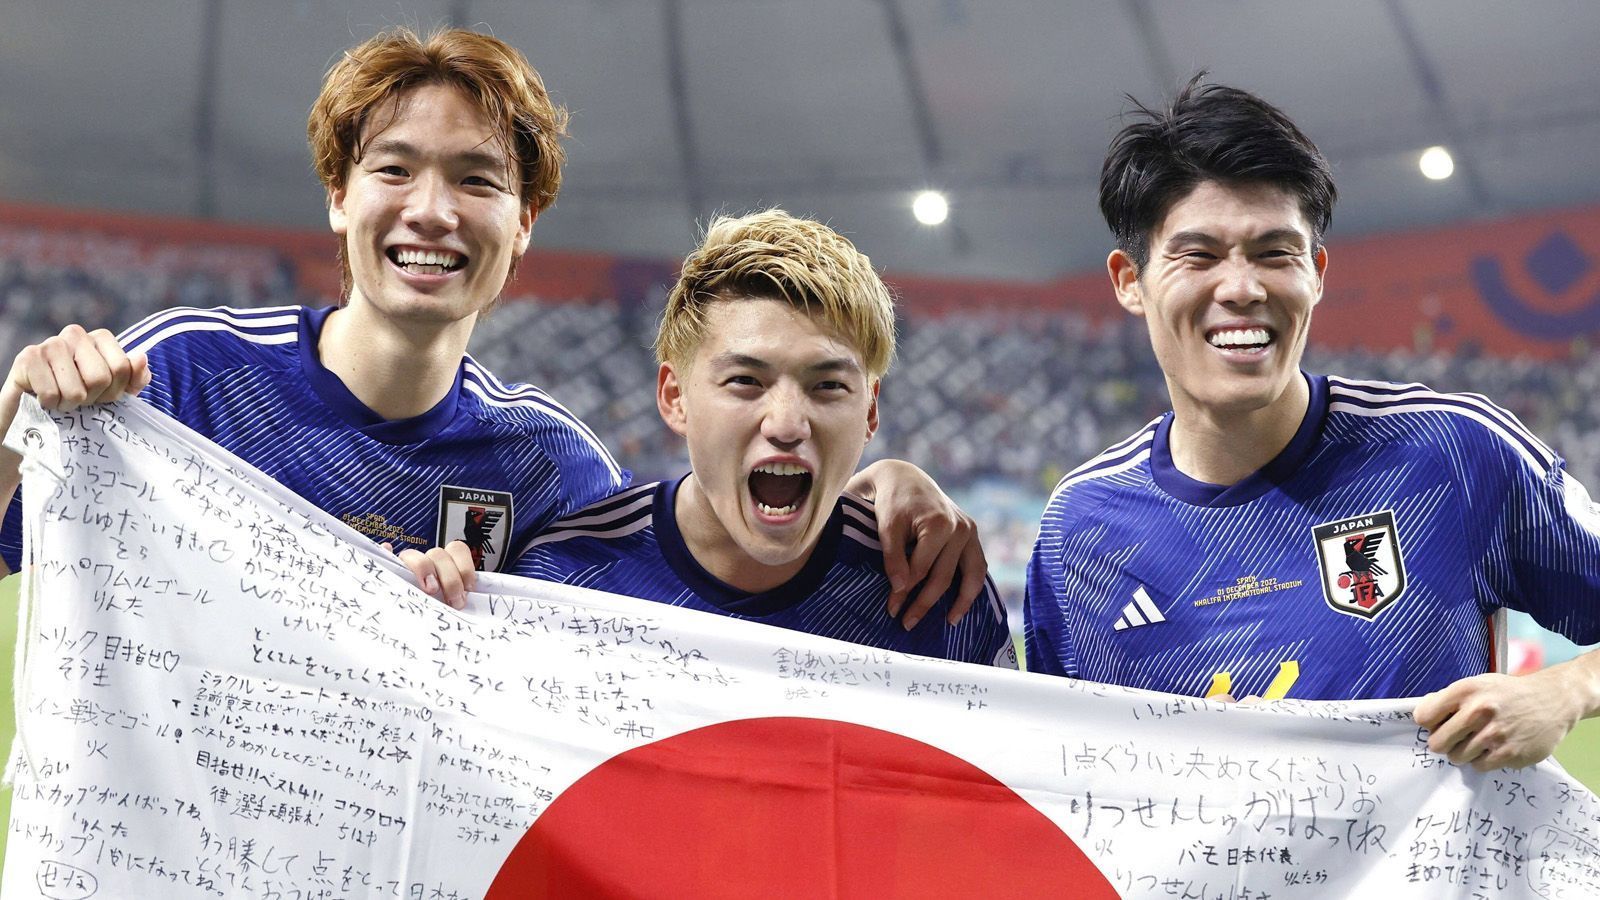 
                <strong>Japan</strong><br>
                Deutschland kann nicht wirklich sauer sein auf Japan. Das haben sich die DFB-Jungs schon selber verbockt. Einerseits wünscht man ihnen ein frühes Ausscheiden, damit die Fans nicht weiter die Stadien aufräumen "müssen", andererseits haben sich die Japaner und vor allem die Fans doch genau damit in alle Herzen gespielt. Außerdem kann Deutschland dann sagen, es hat gegen den Weltmeister verloren.  
              